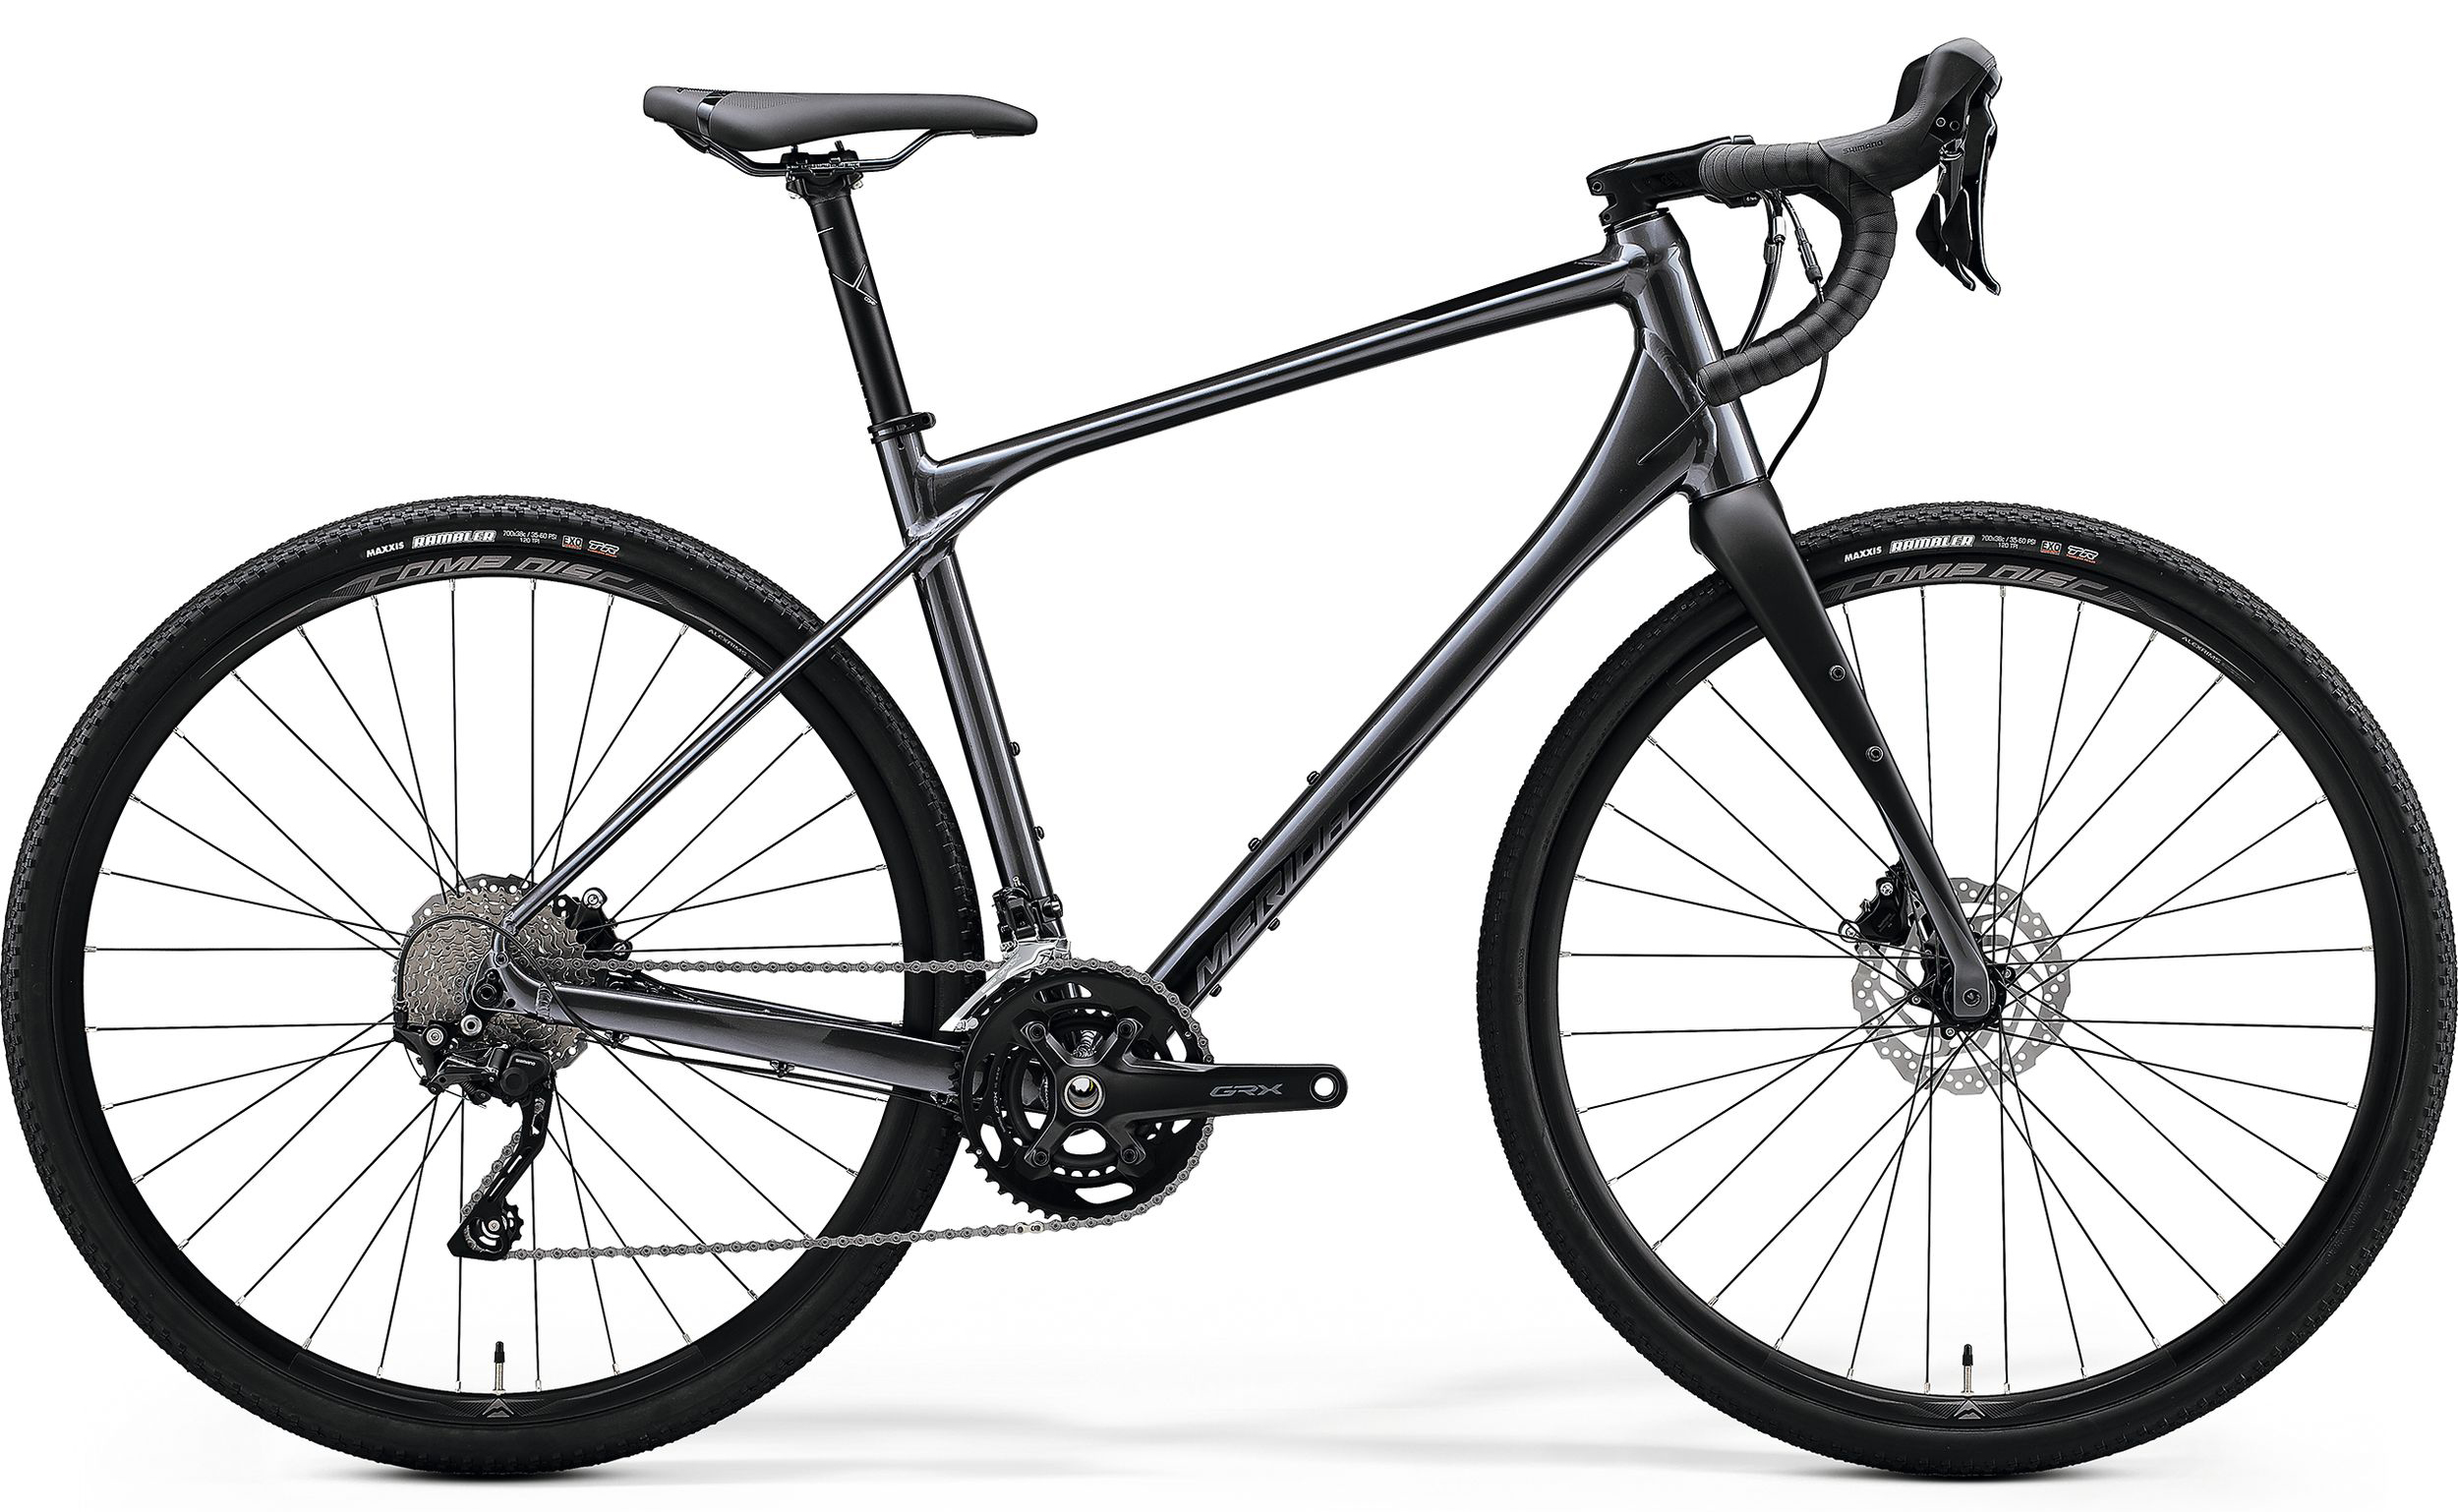  Отзывы о Шоссейном велосипеде Merida Silex 400 2020